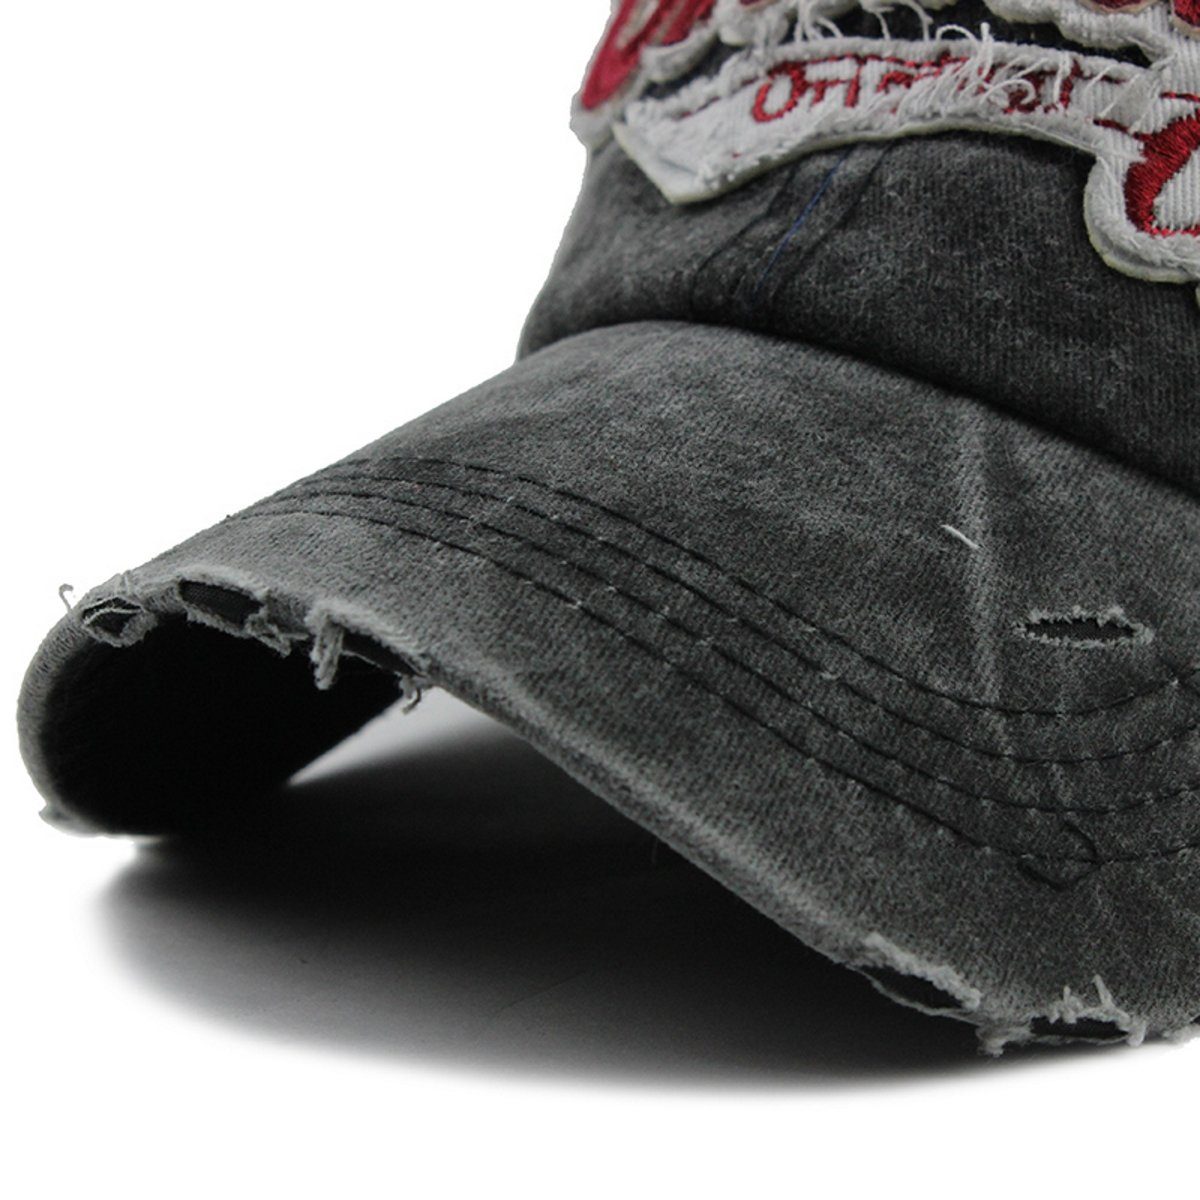 Style schwarz Vintage Retro Look Baseballcap Used Cap Washed Original Sporty Baseball Orlando